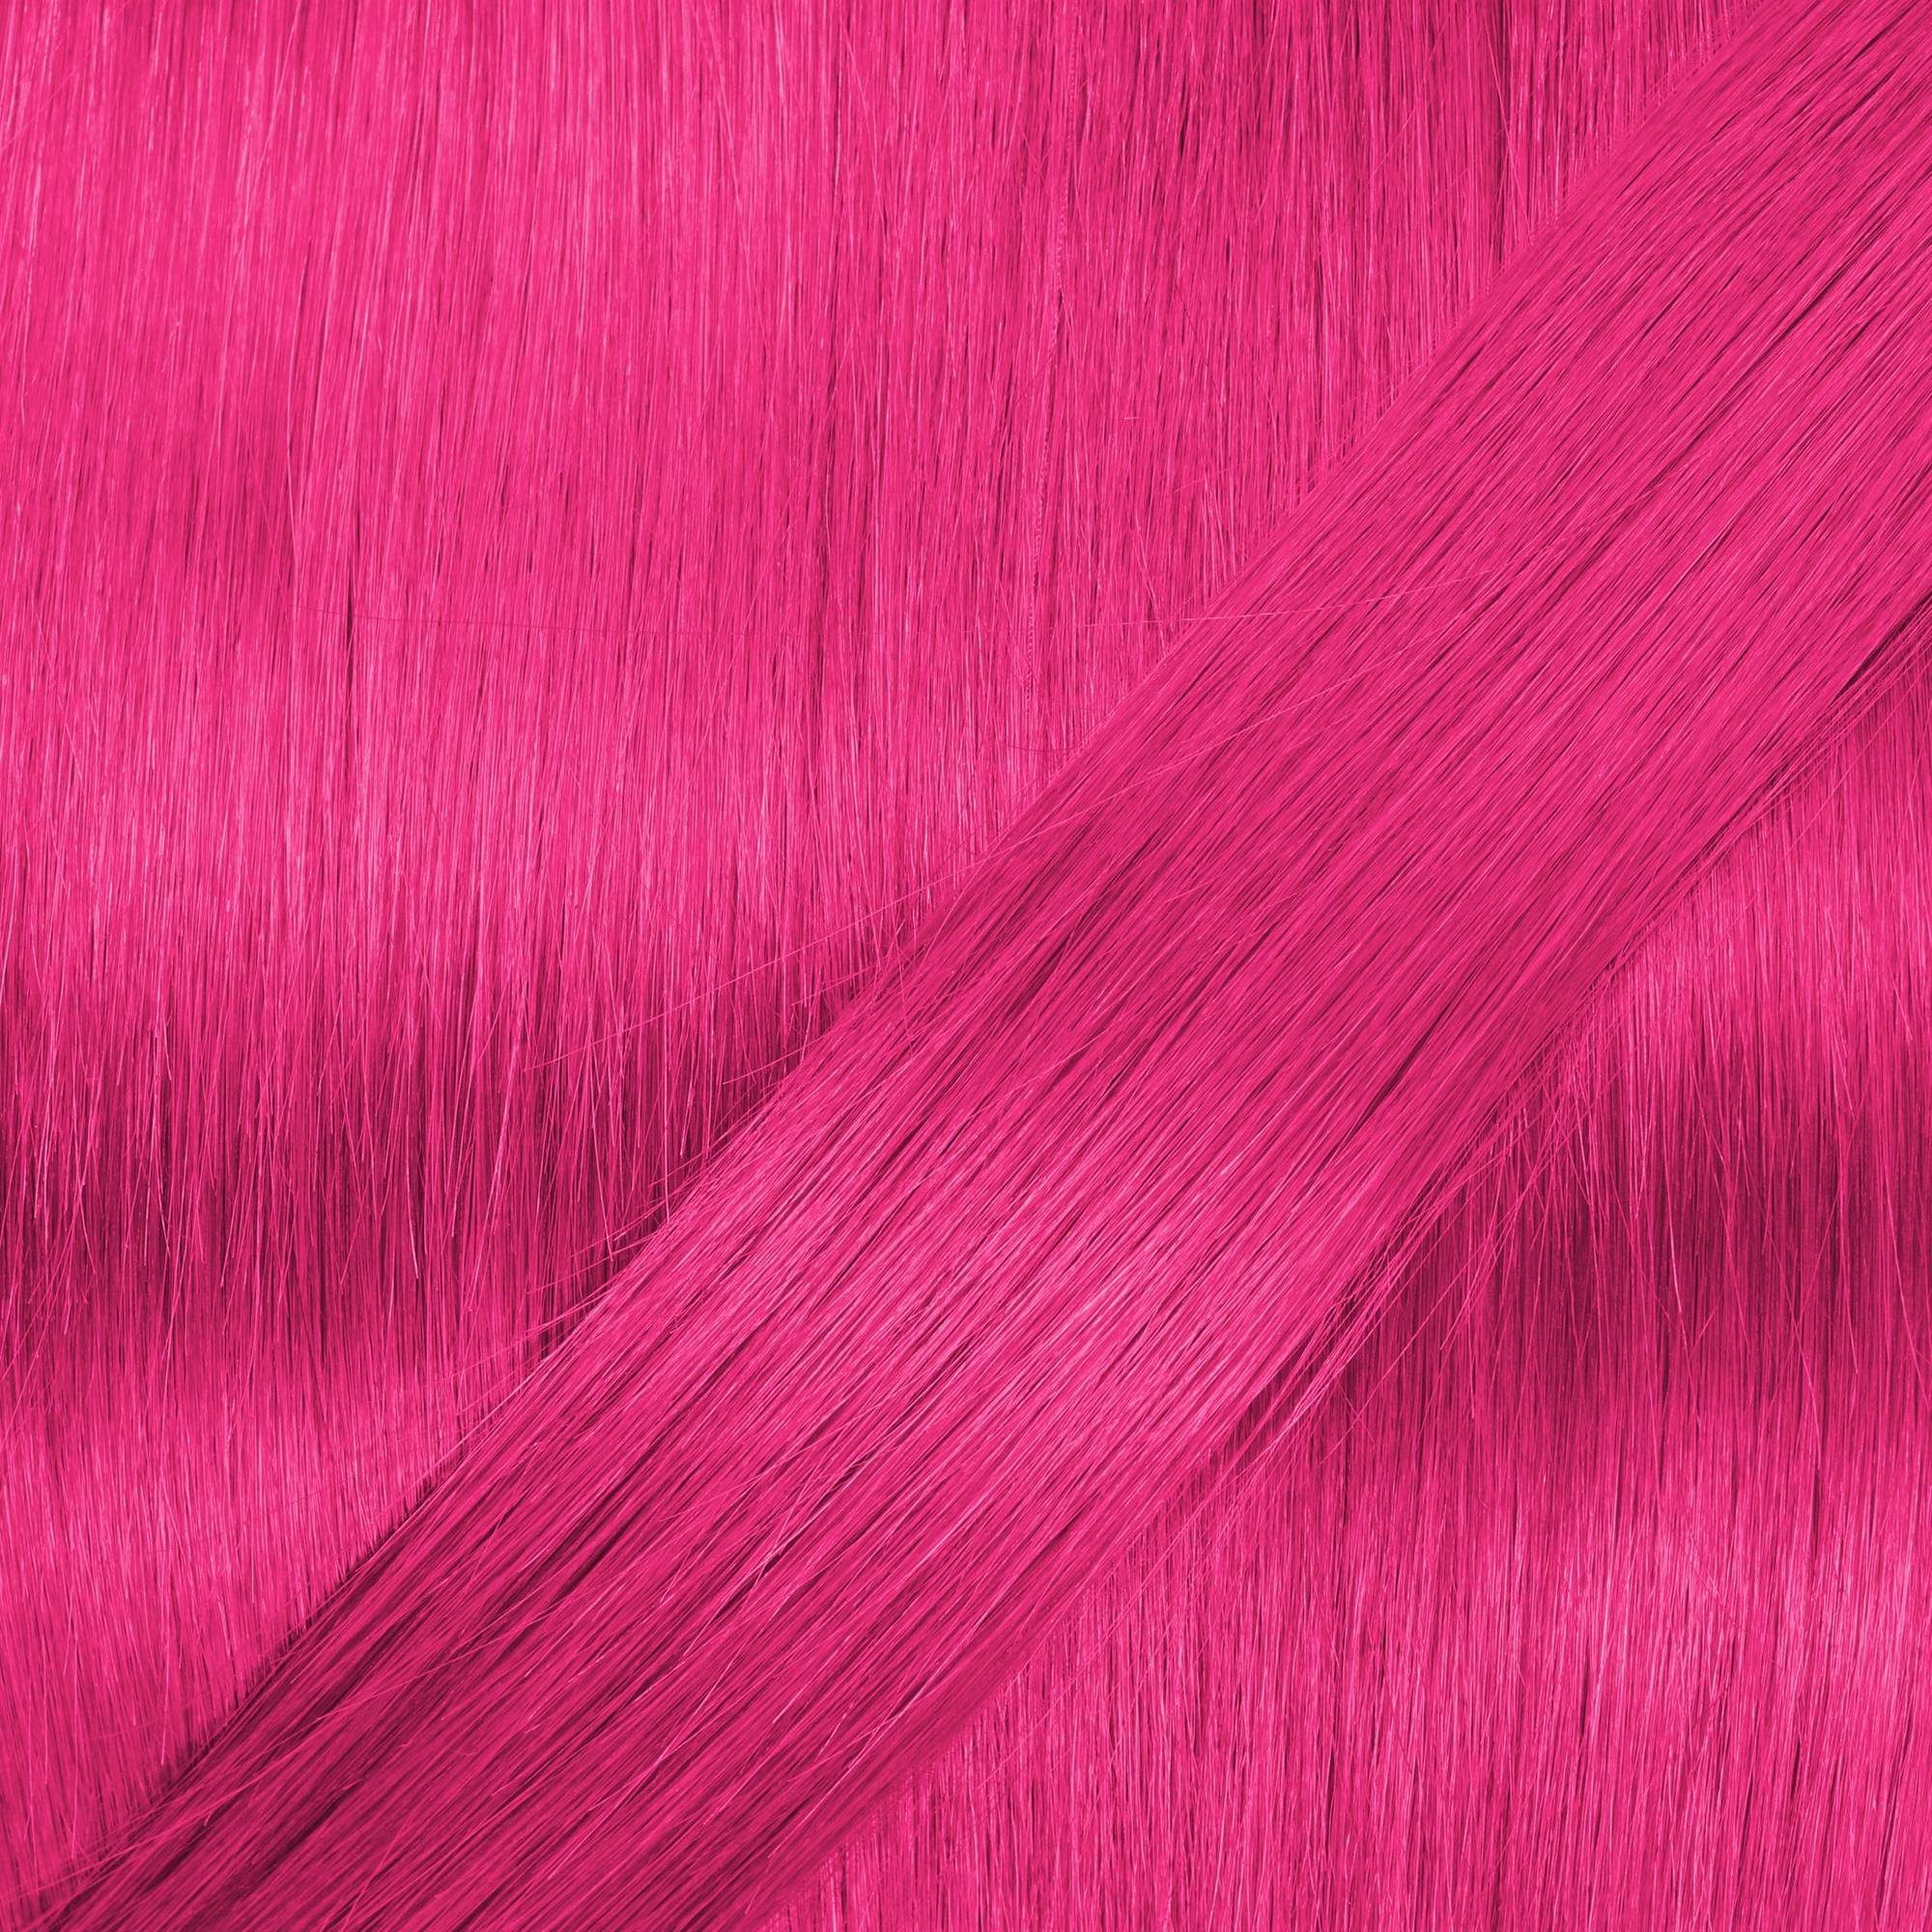 Tape #Pink Echthaar-Extension hair2heart 60cm Extensions glatt